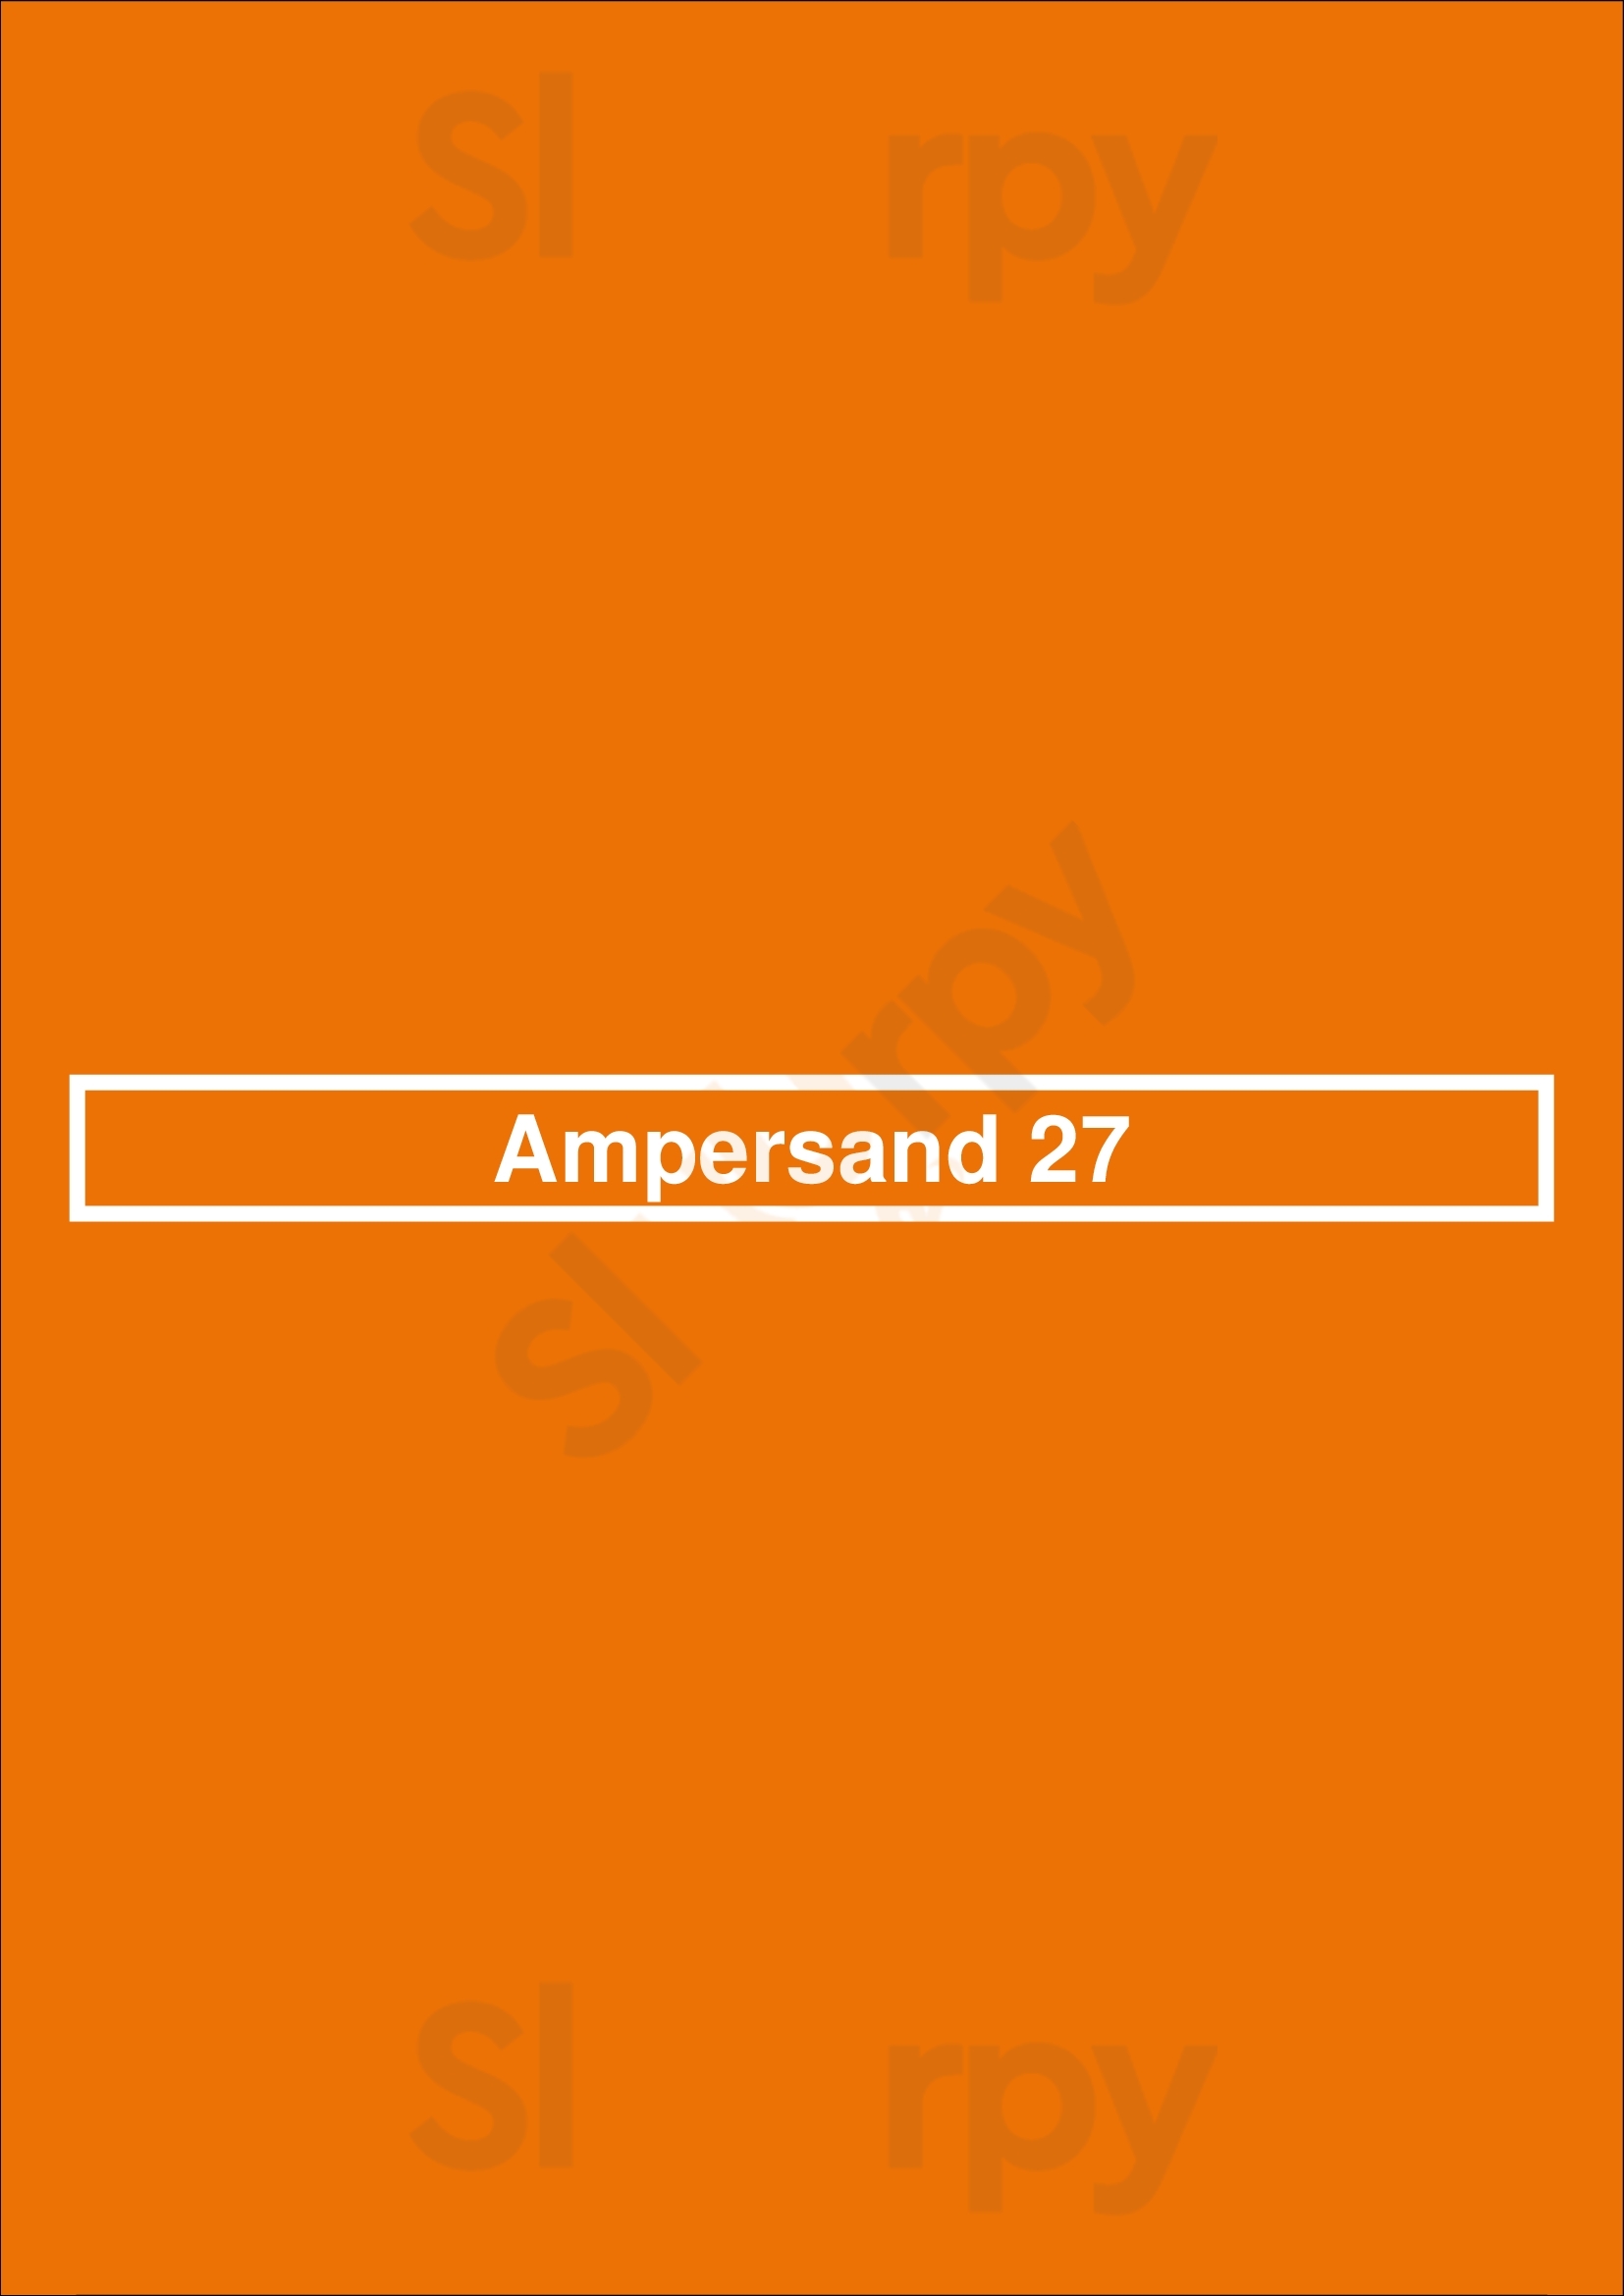 Ampersand 27 Edmonton Menu - 1